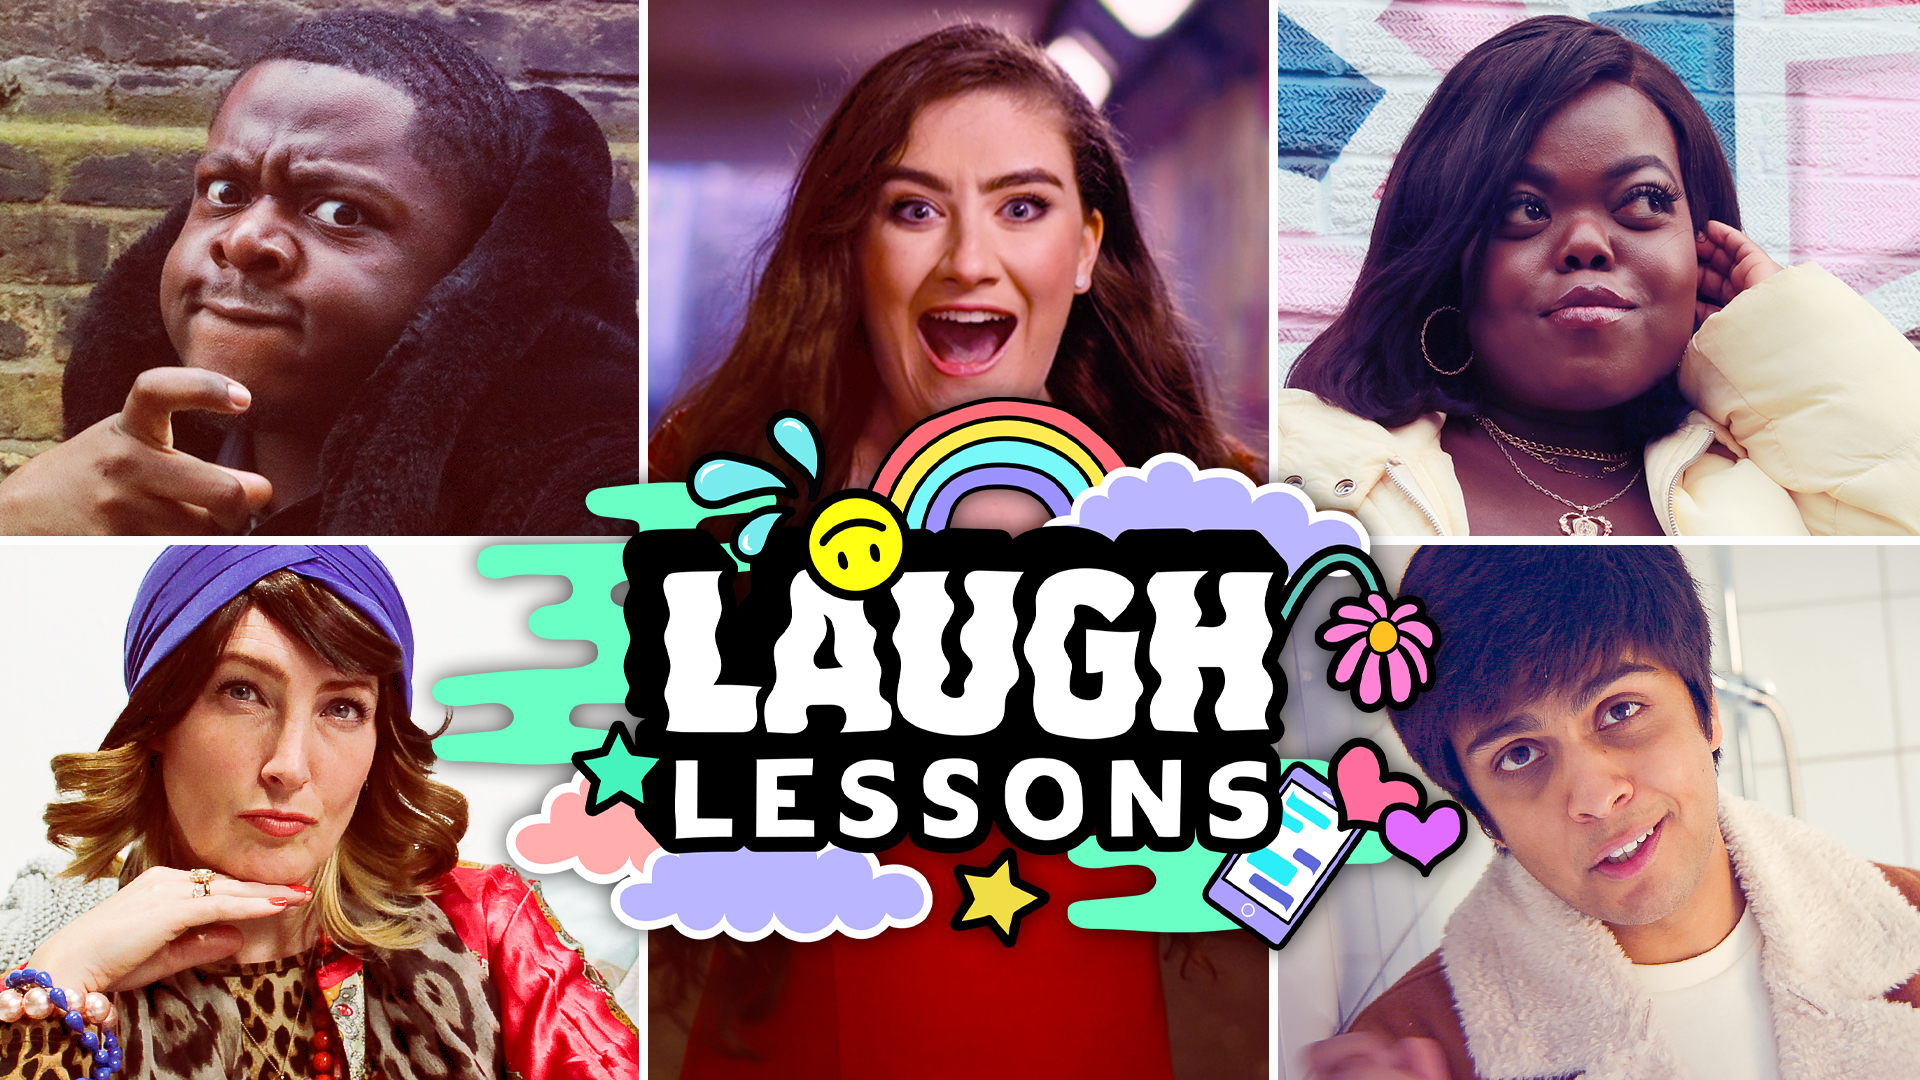 BBC Laugh Lessons